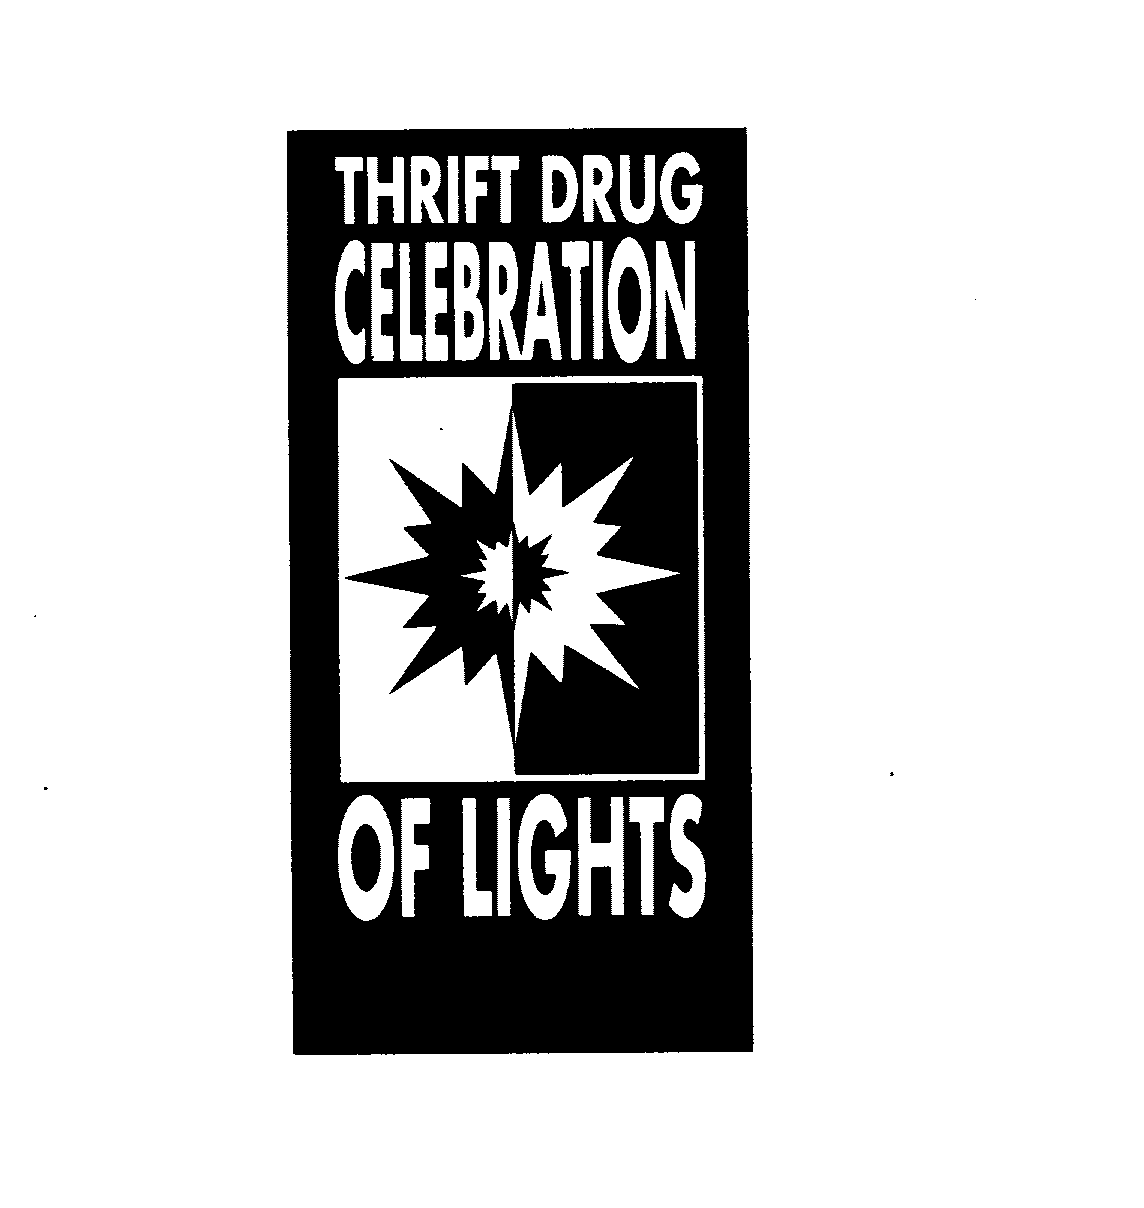  THRIFT DRUG CELEBRATION OF LIGHTS